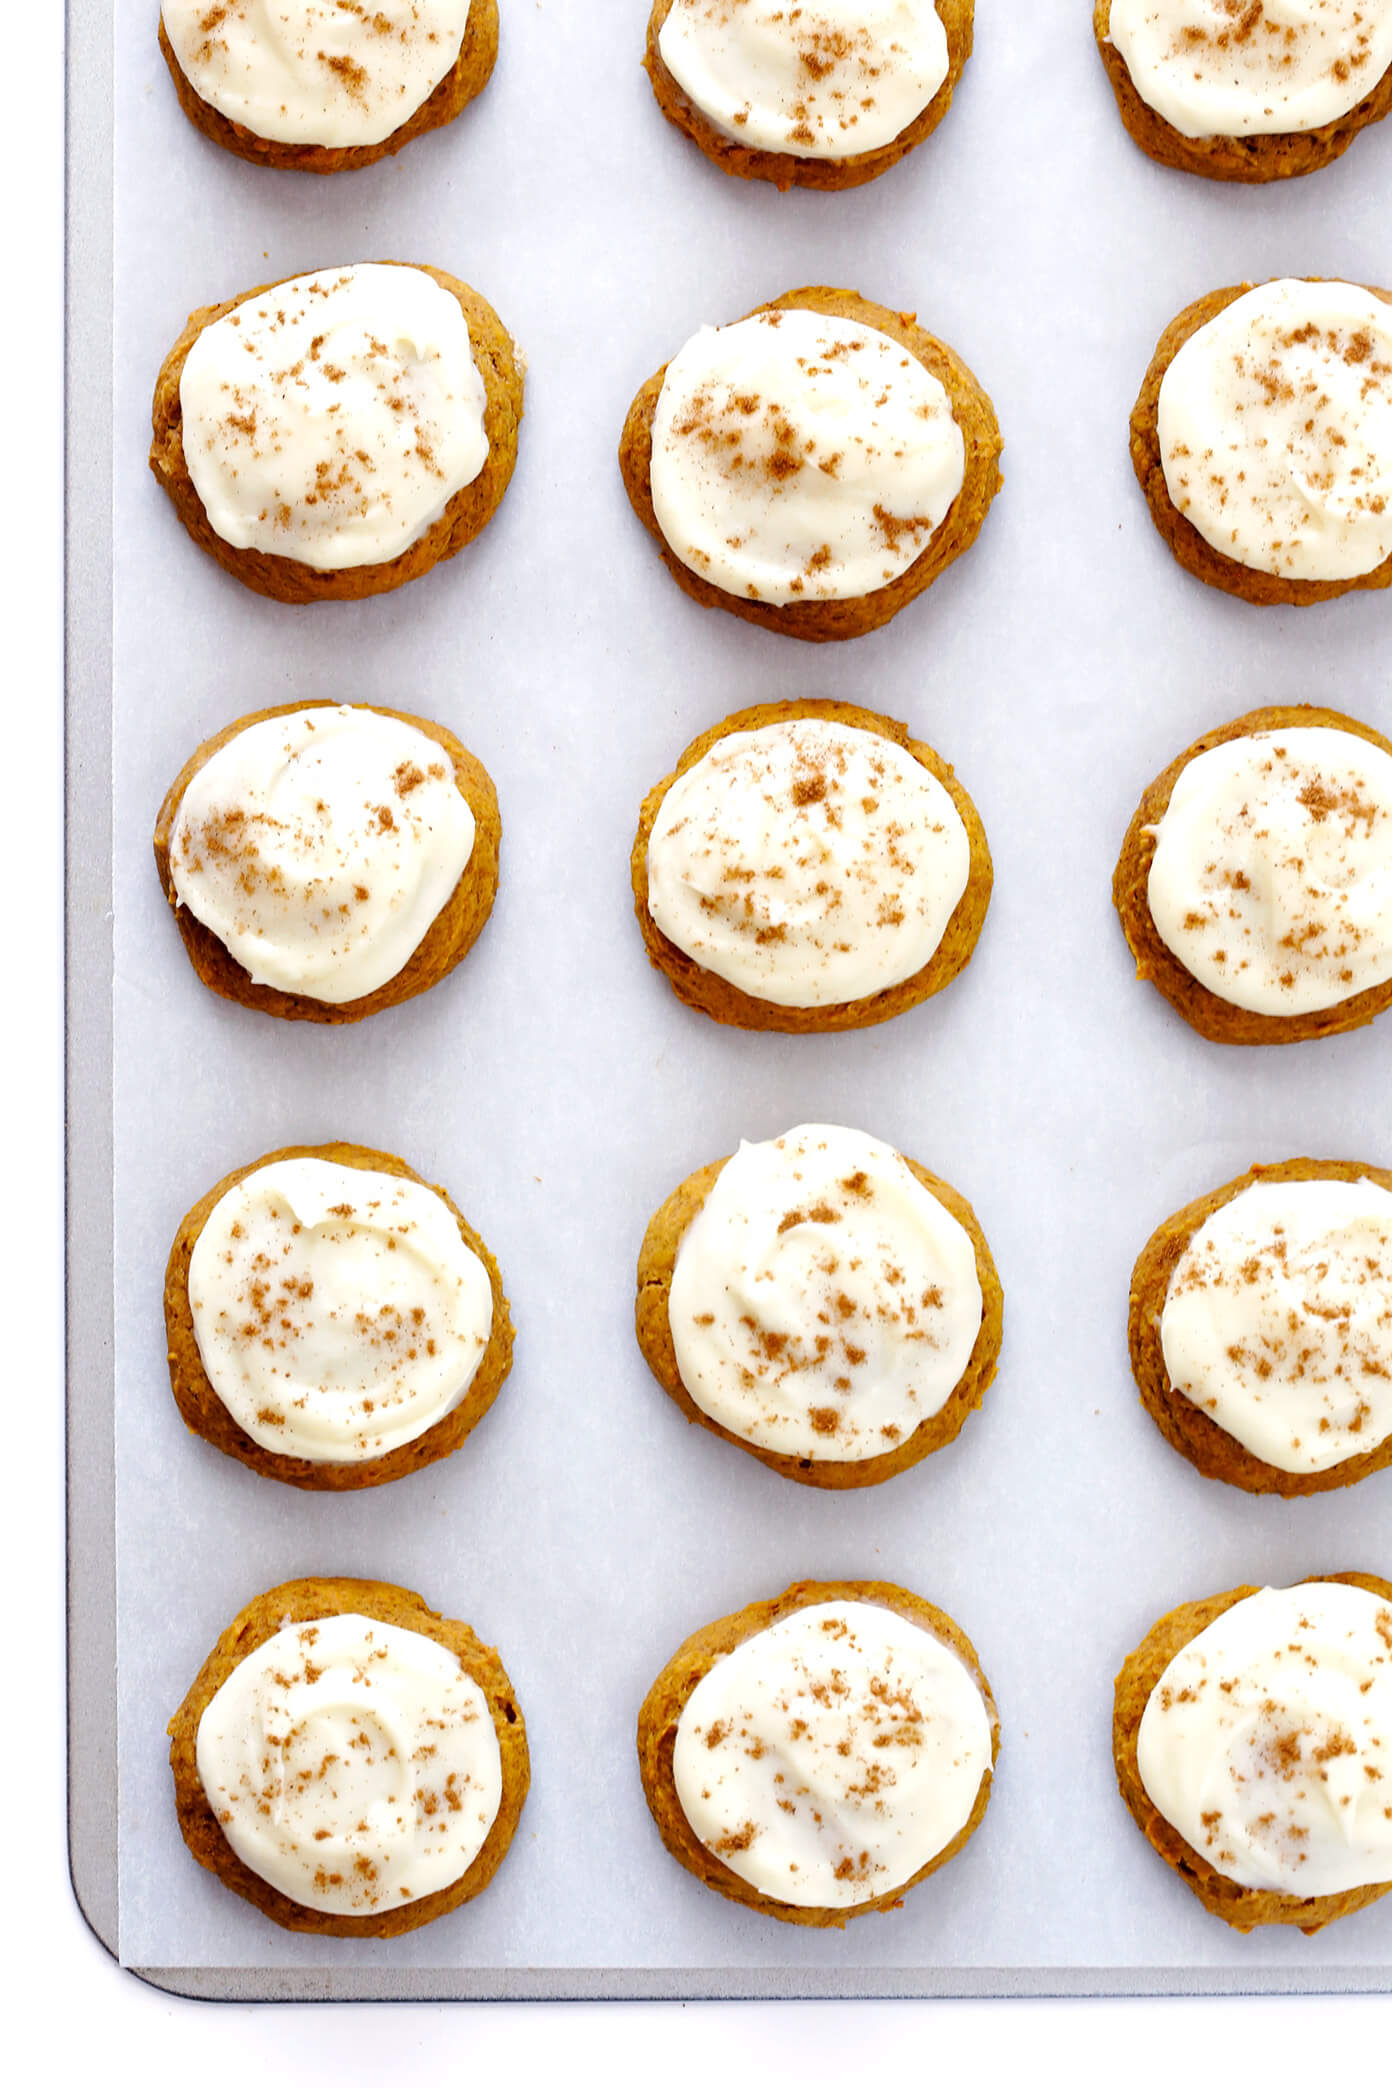 我最喜欢的南瓜曲奇食谱!这些软而美味的南瓜饼干上裹着一层神圣的奶油芝士糖霜，是秋季烘焙甜点的完美选择。这么美味!| gimmesomeoven.com